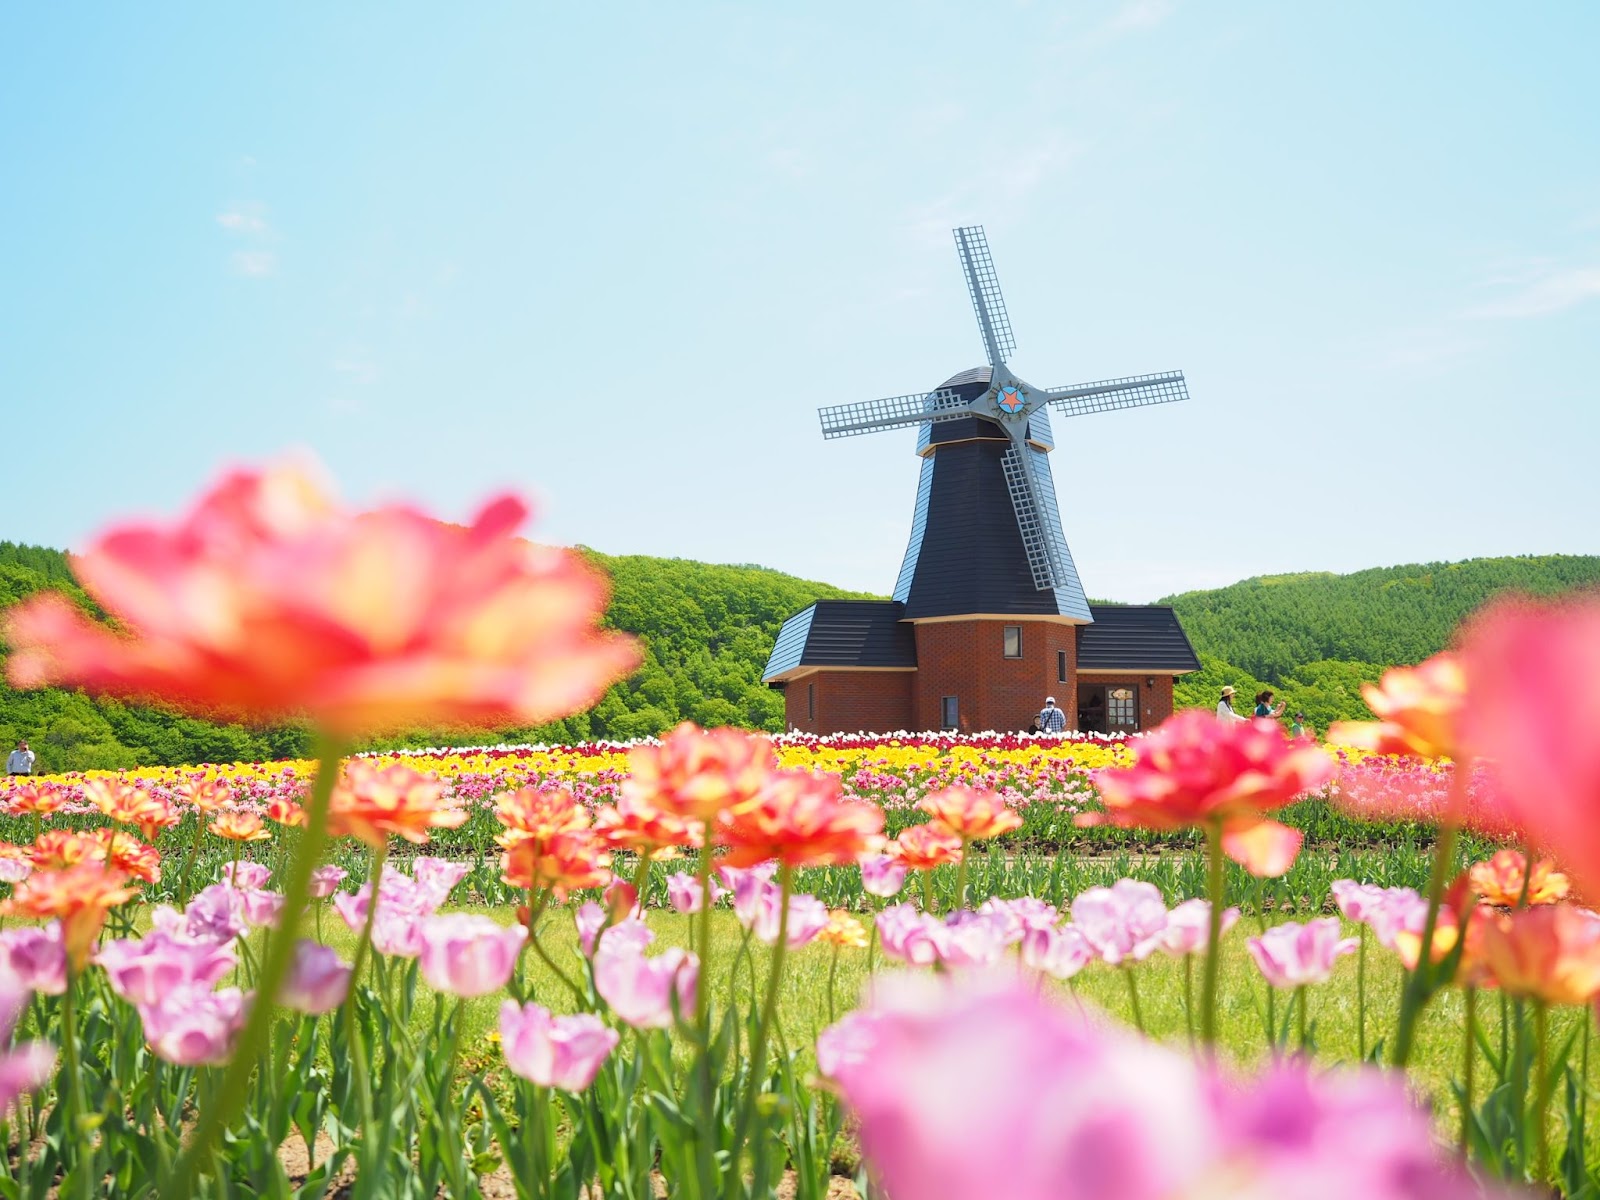 1、オランダの風車と200品種のチューリップ「かみゆうべつチューリップ公園」